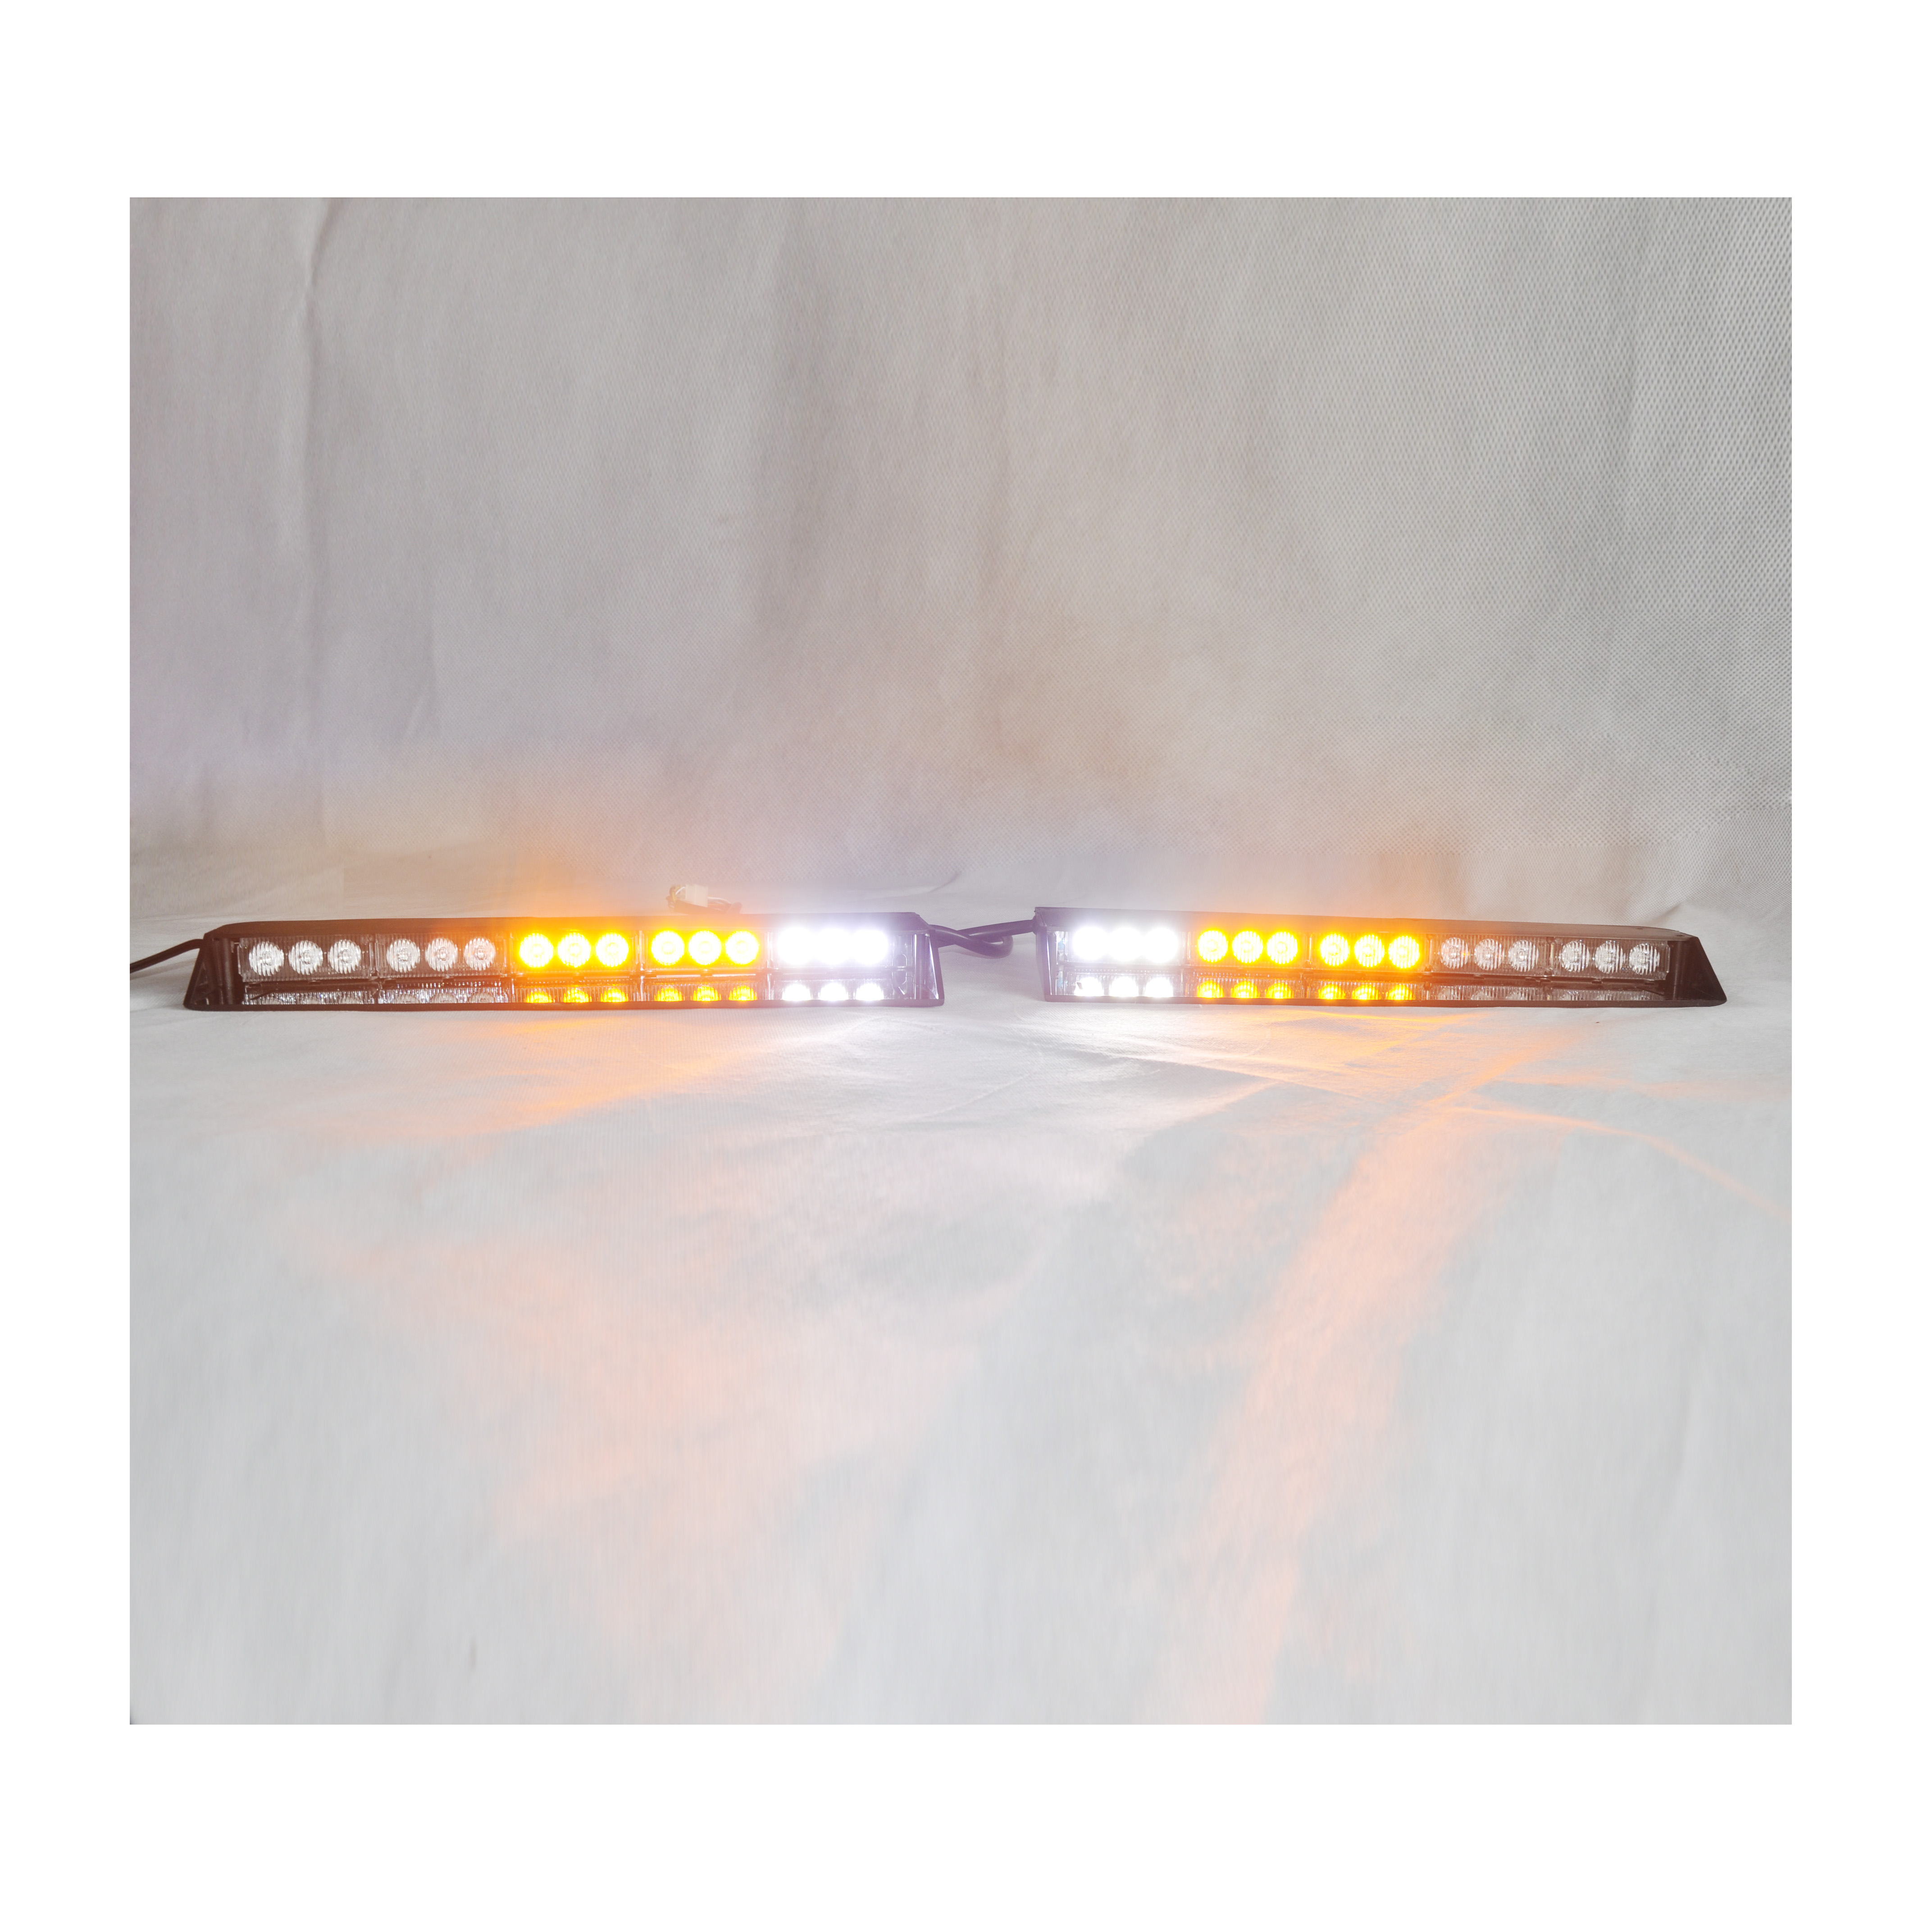 TBD-610B LED visor lightbar